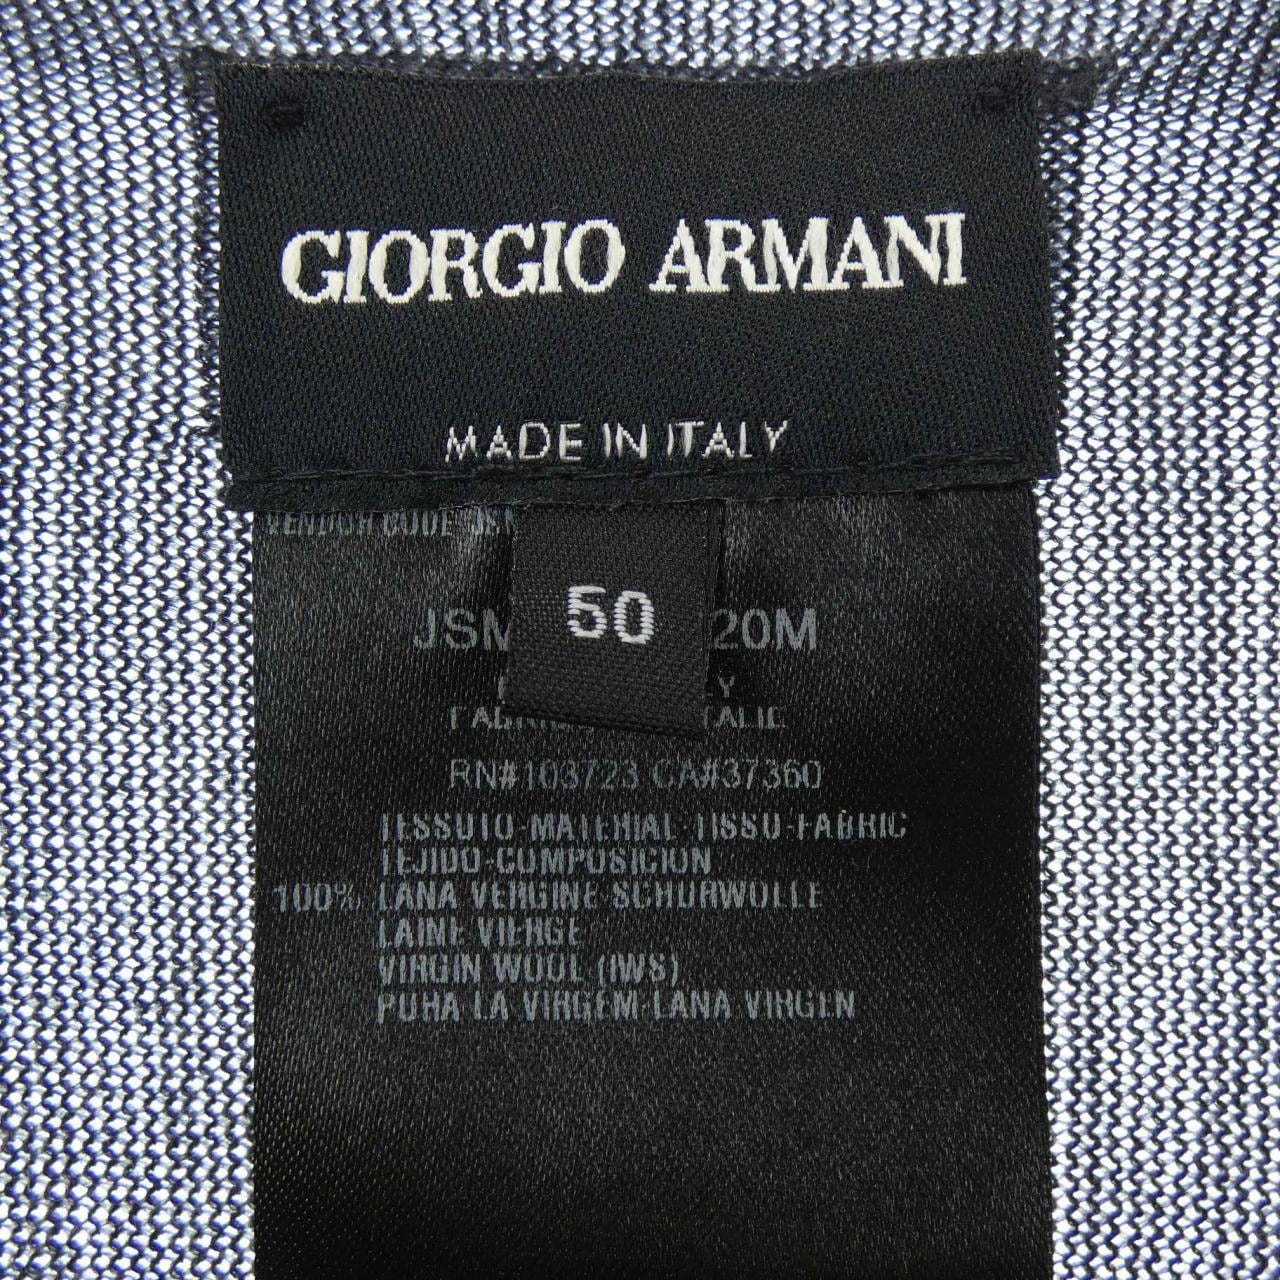 Giorgio Armani GIORGIO ARMANI针织衫